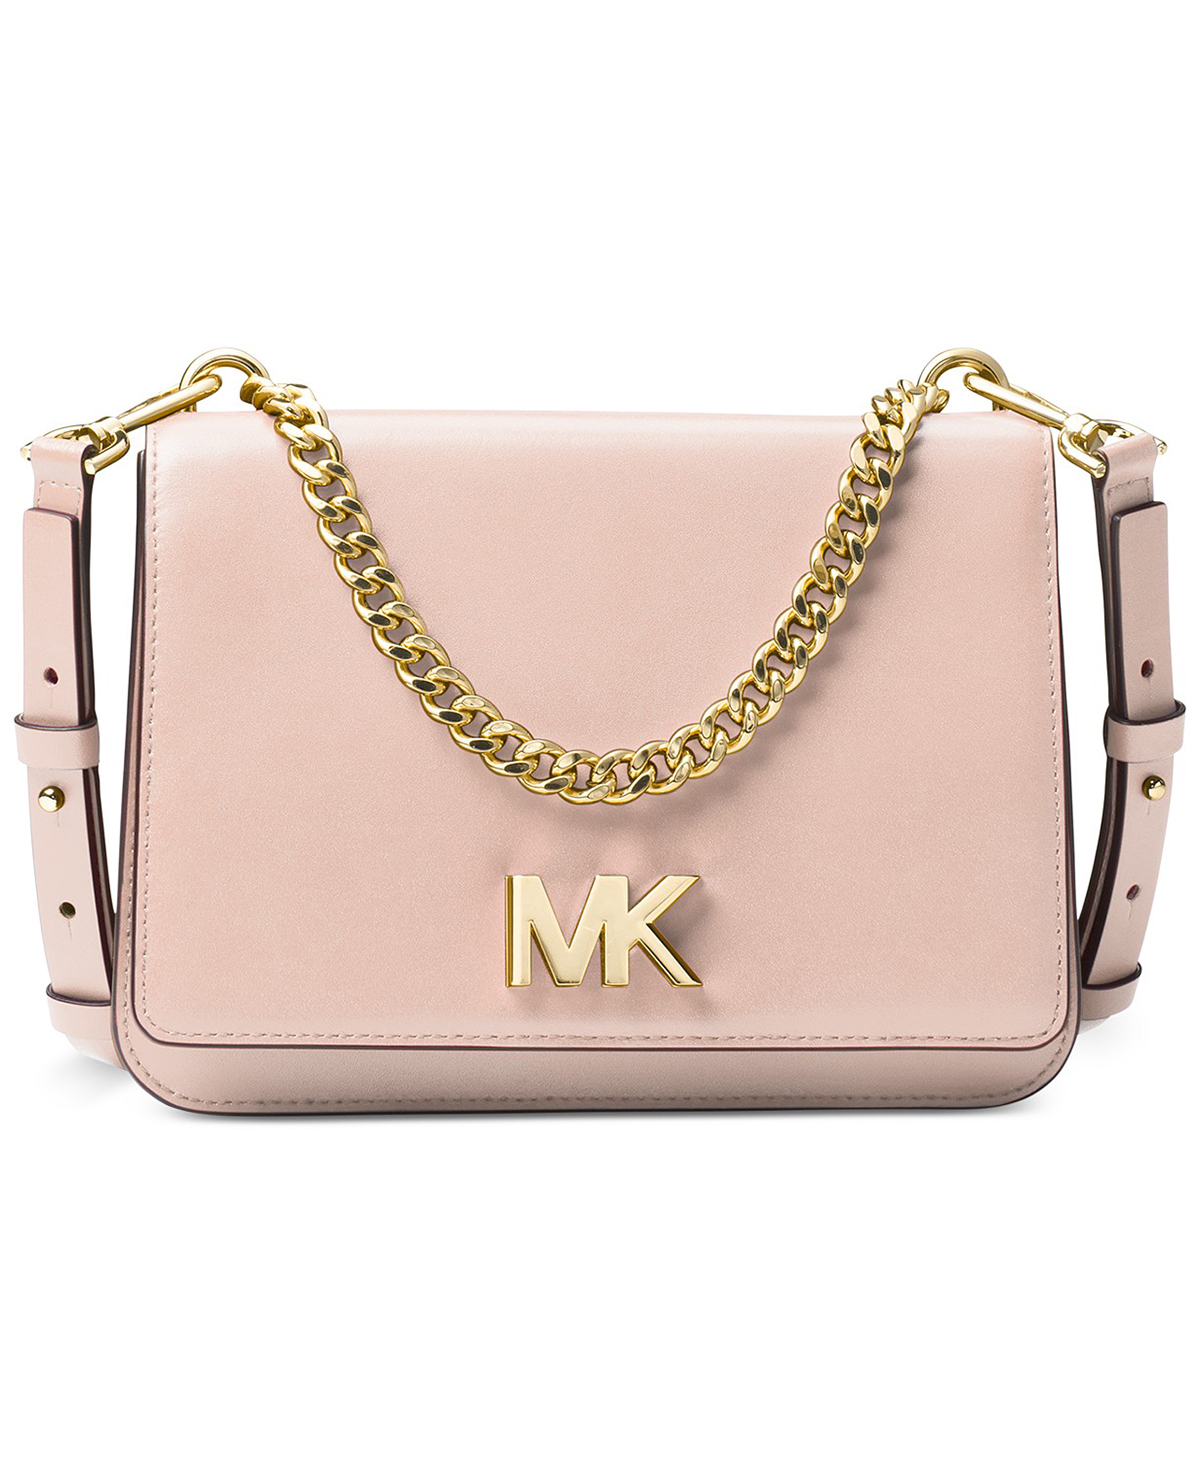 mk handbags on sale